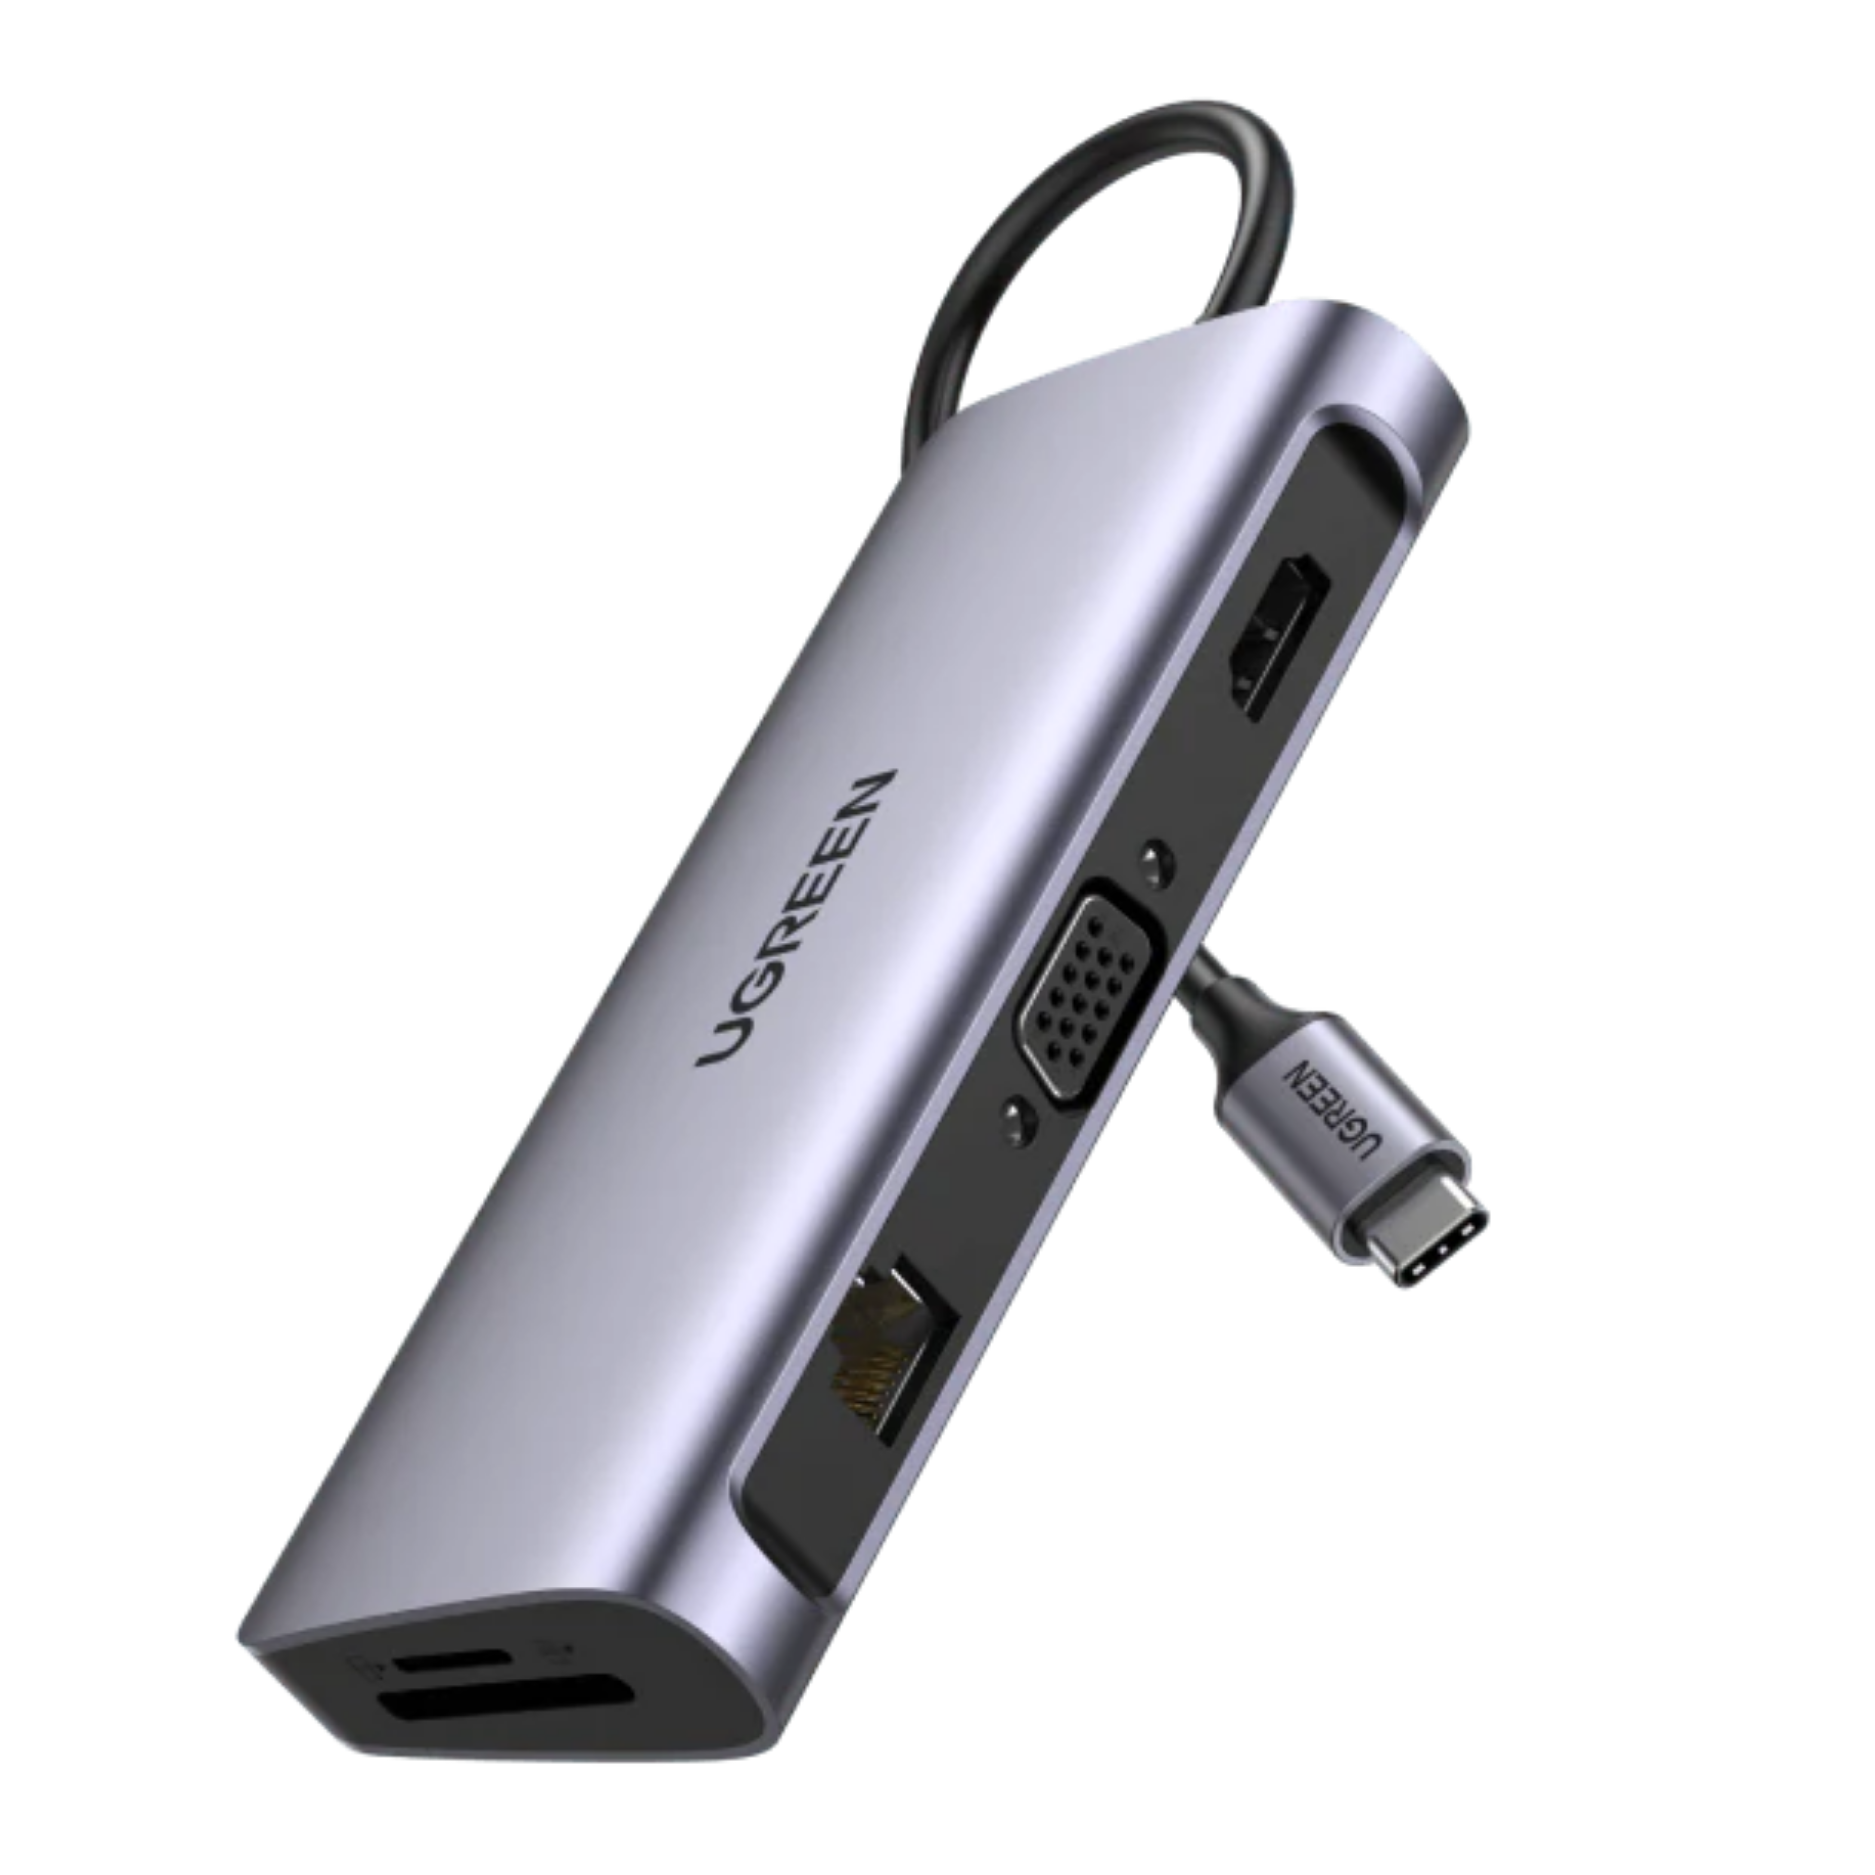 Hub adaptador USB-C Ugreen 10-en-1 RJ45, HDMI, VGA, USB-A, USB-C, SD, TF, AUDIO (80133)